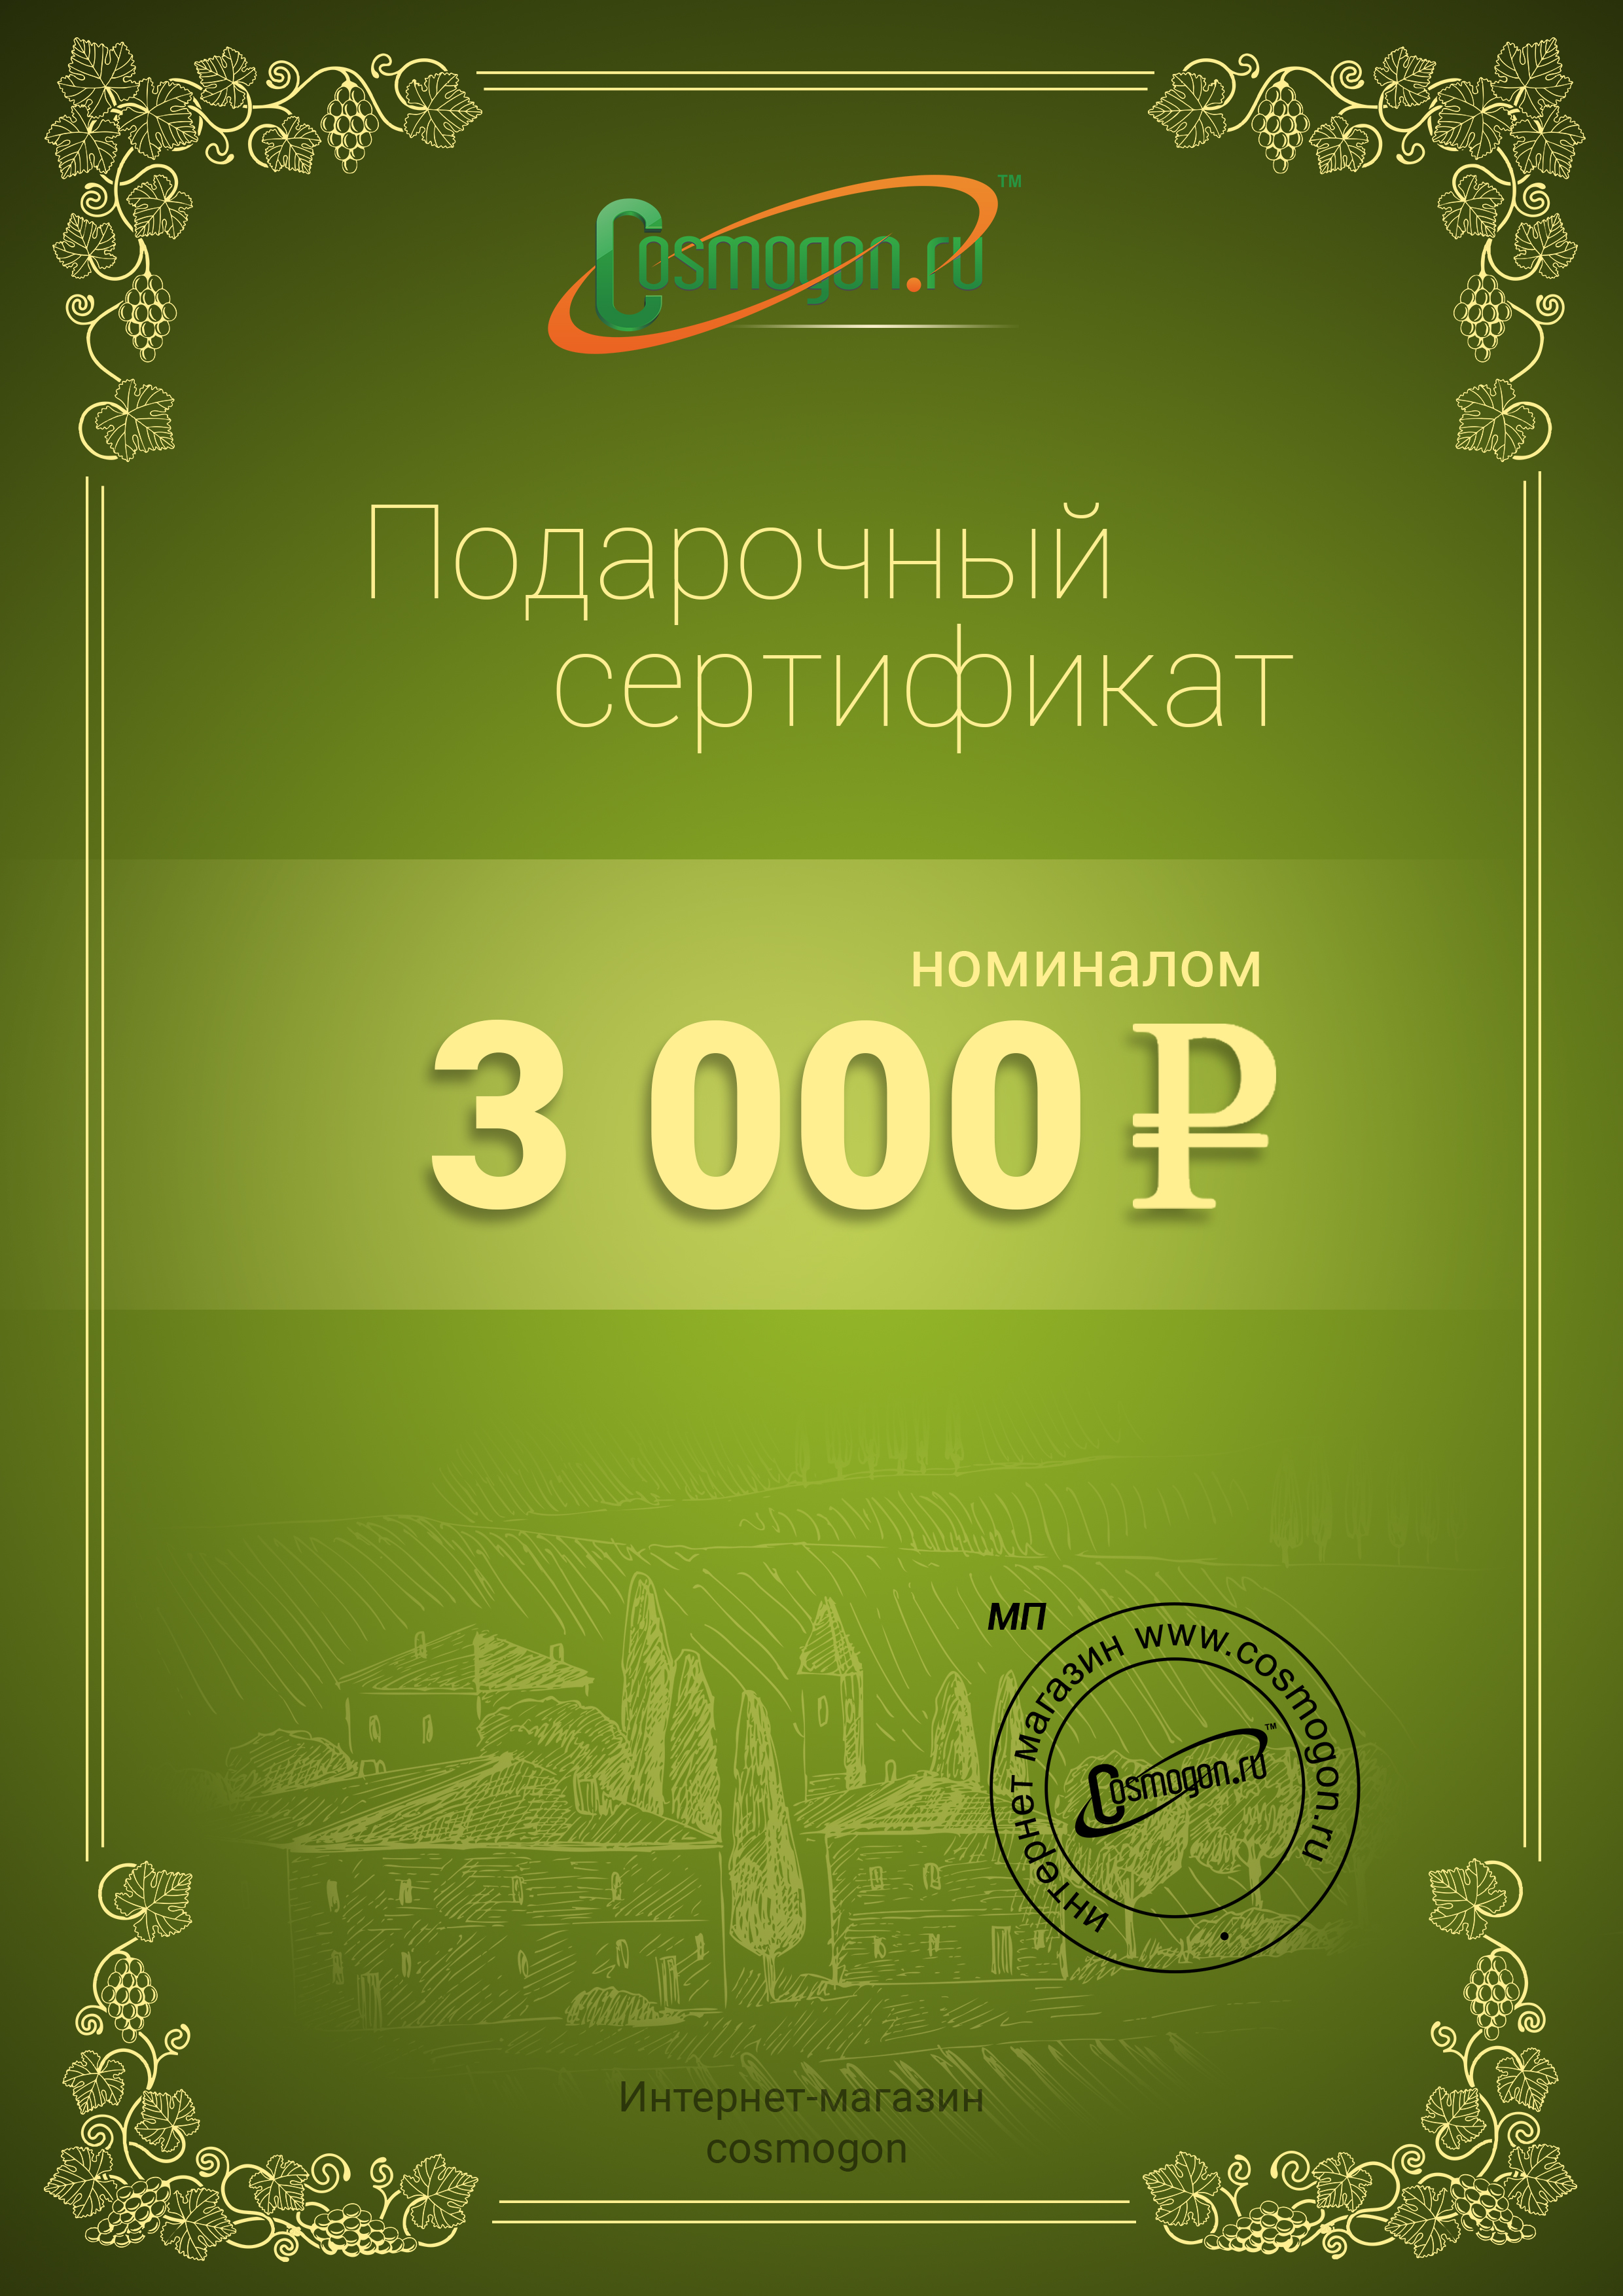 /products/podarochnyy-sertifikat-na-3000-rubley/